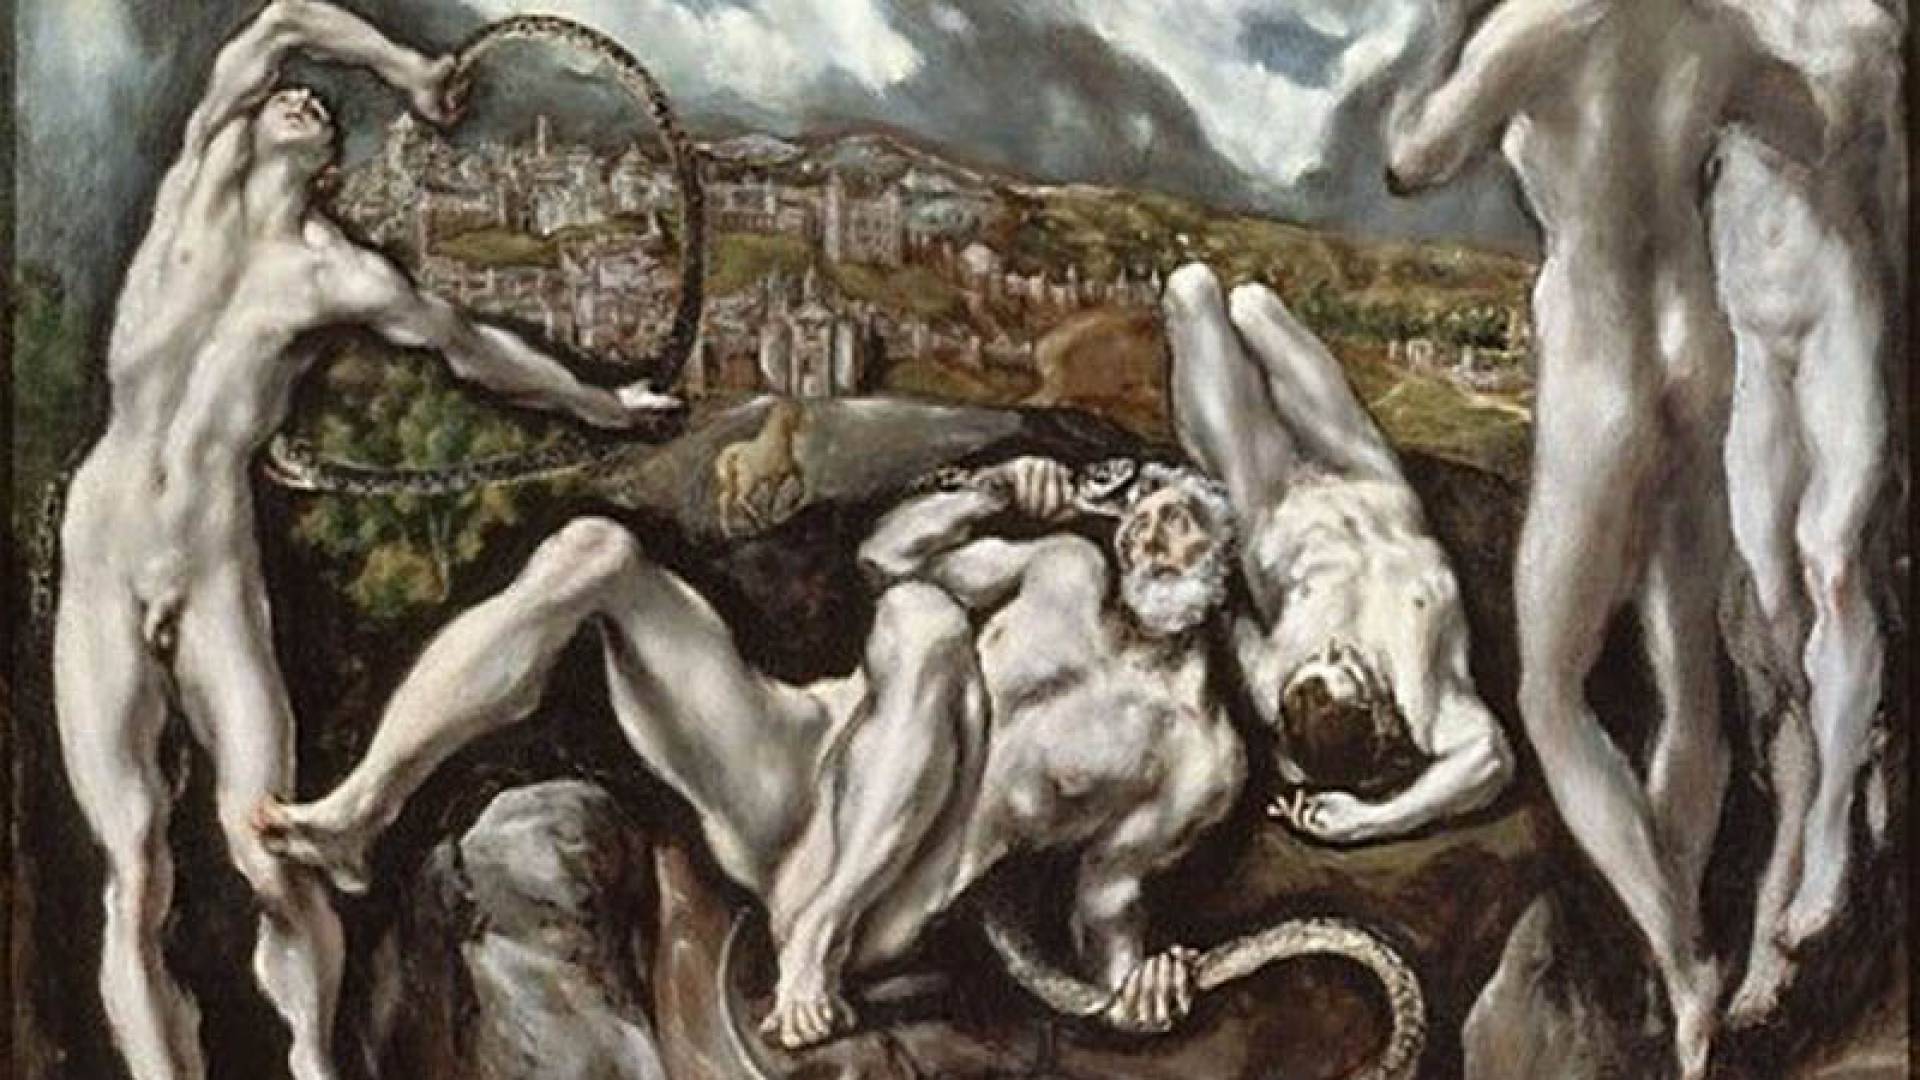 NATIONAL GALLERY, Laokoon El Greco